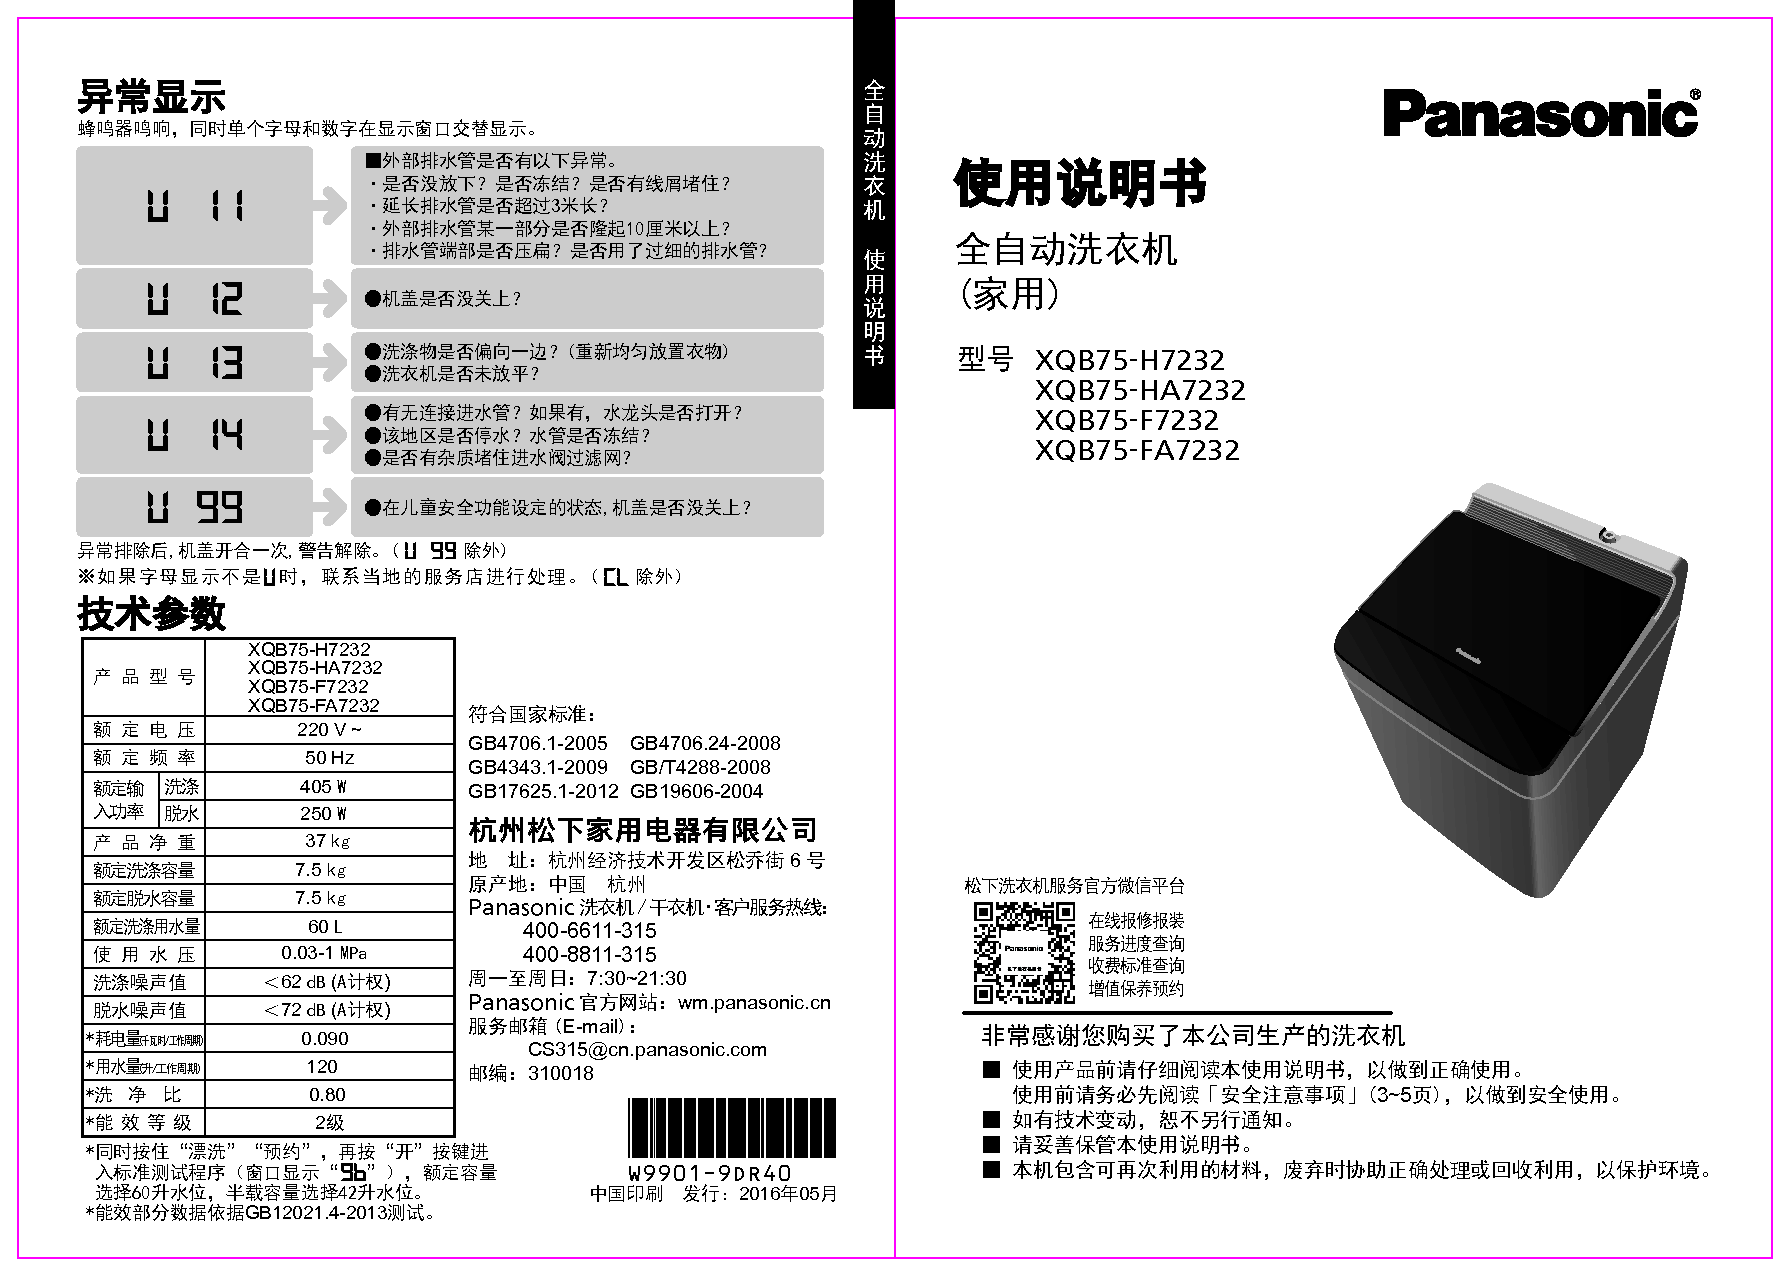 松下 Panasonic XQB75-F7232 使用说明书 封面